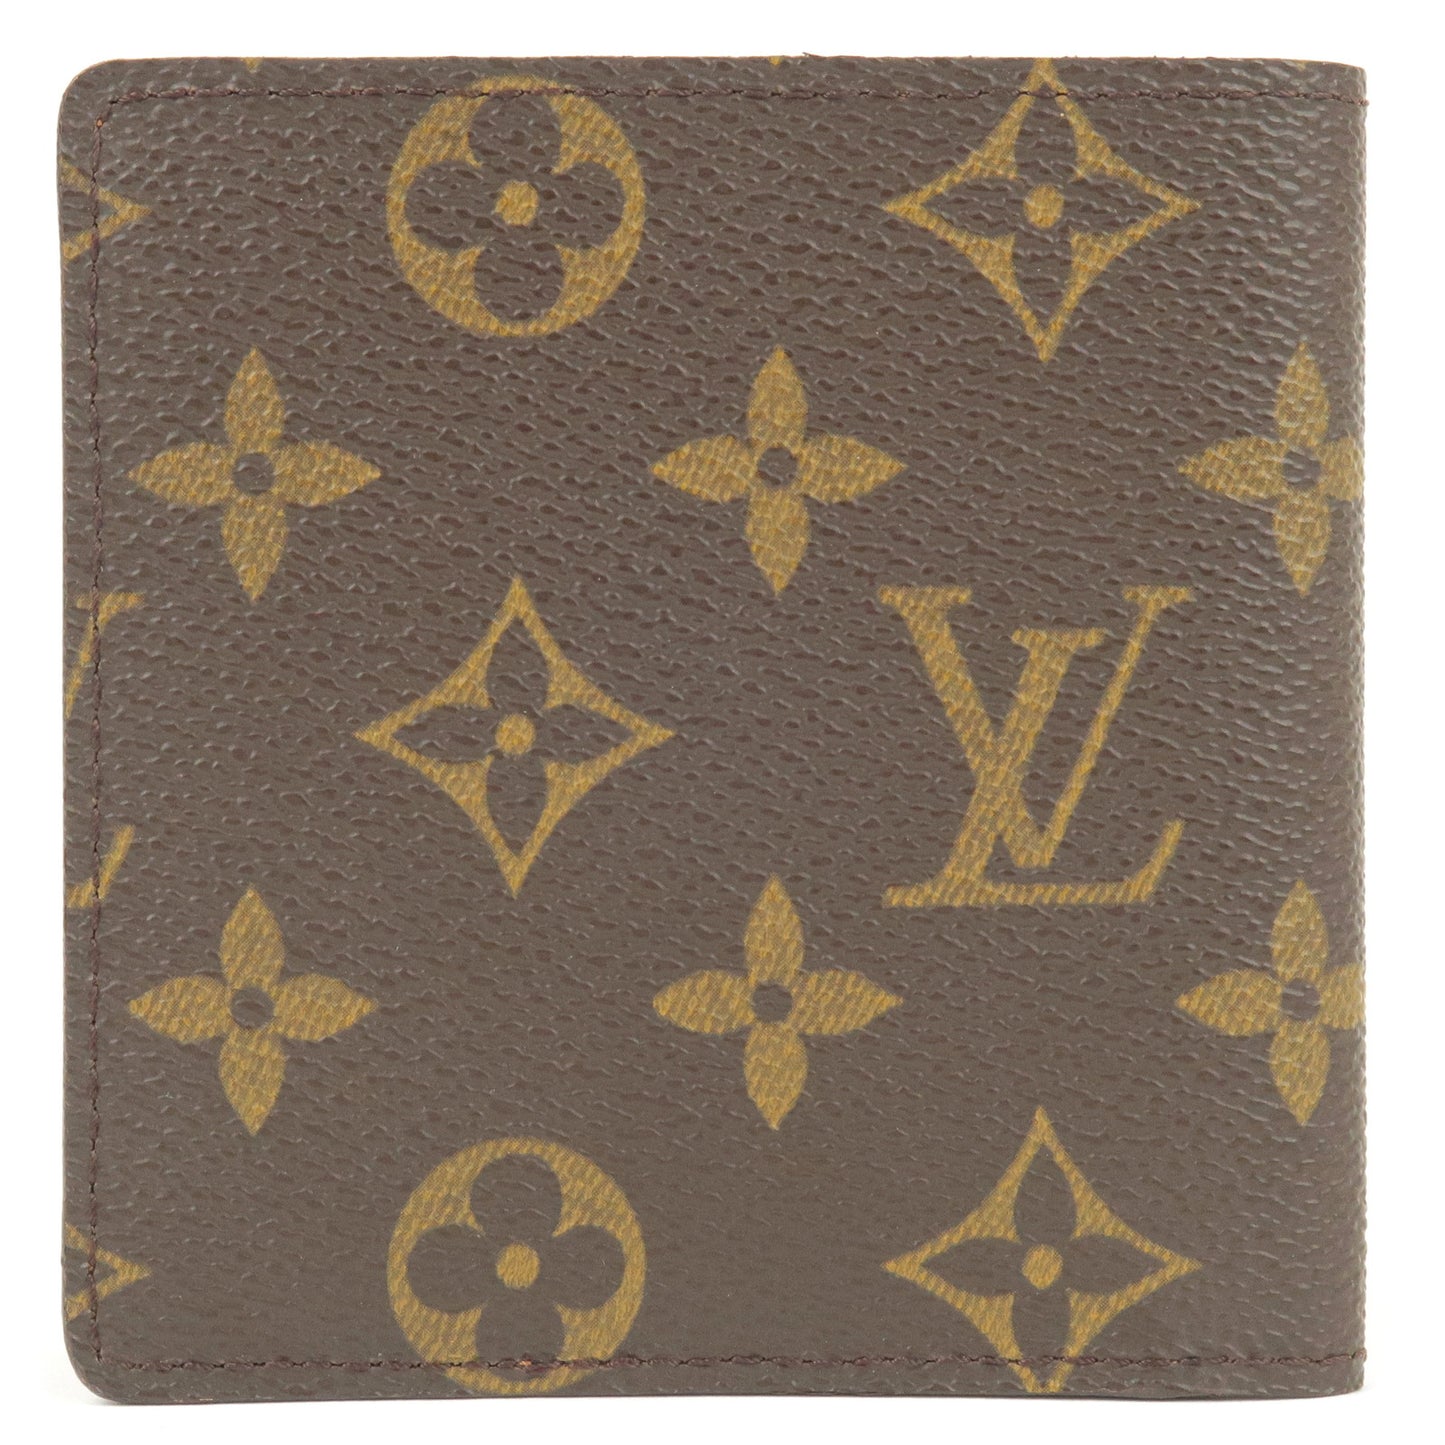 Louis Vuitton Monogram Porte Billets 6 Cartes Credit Wallet M60929